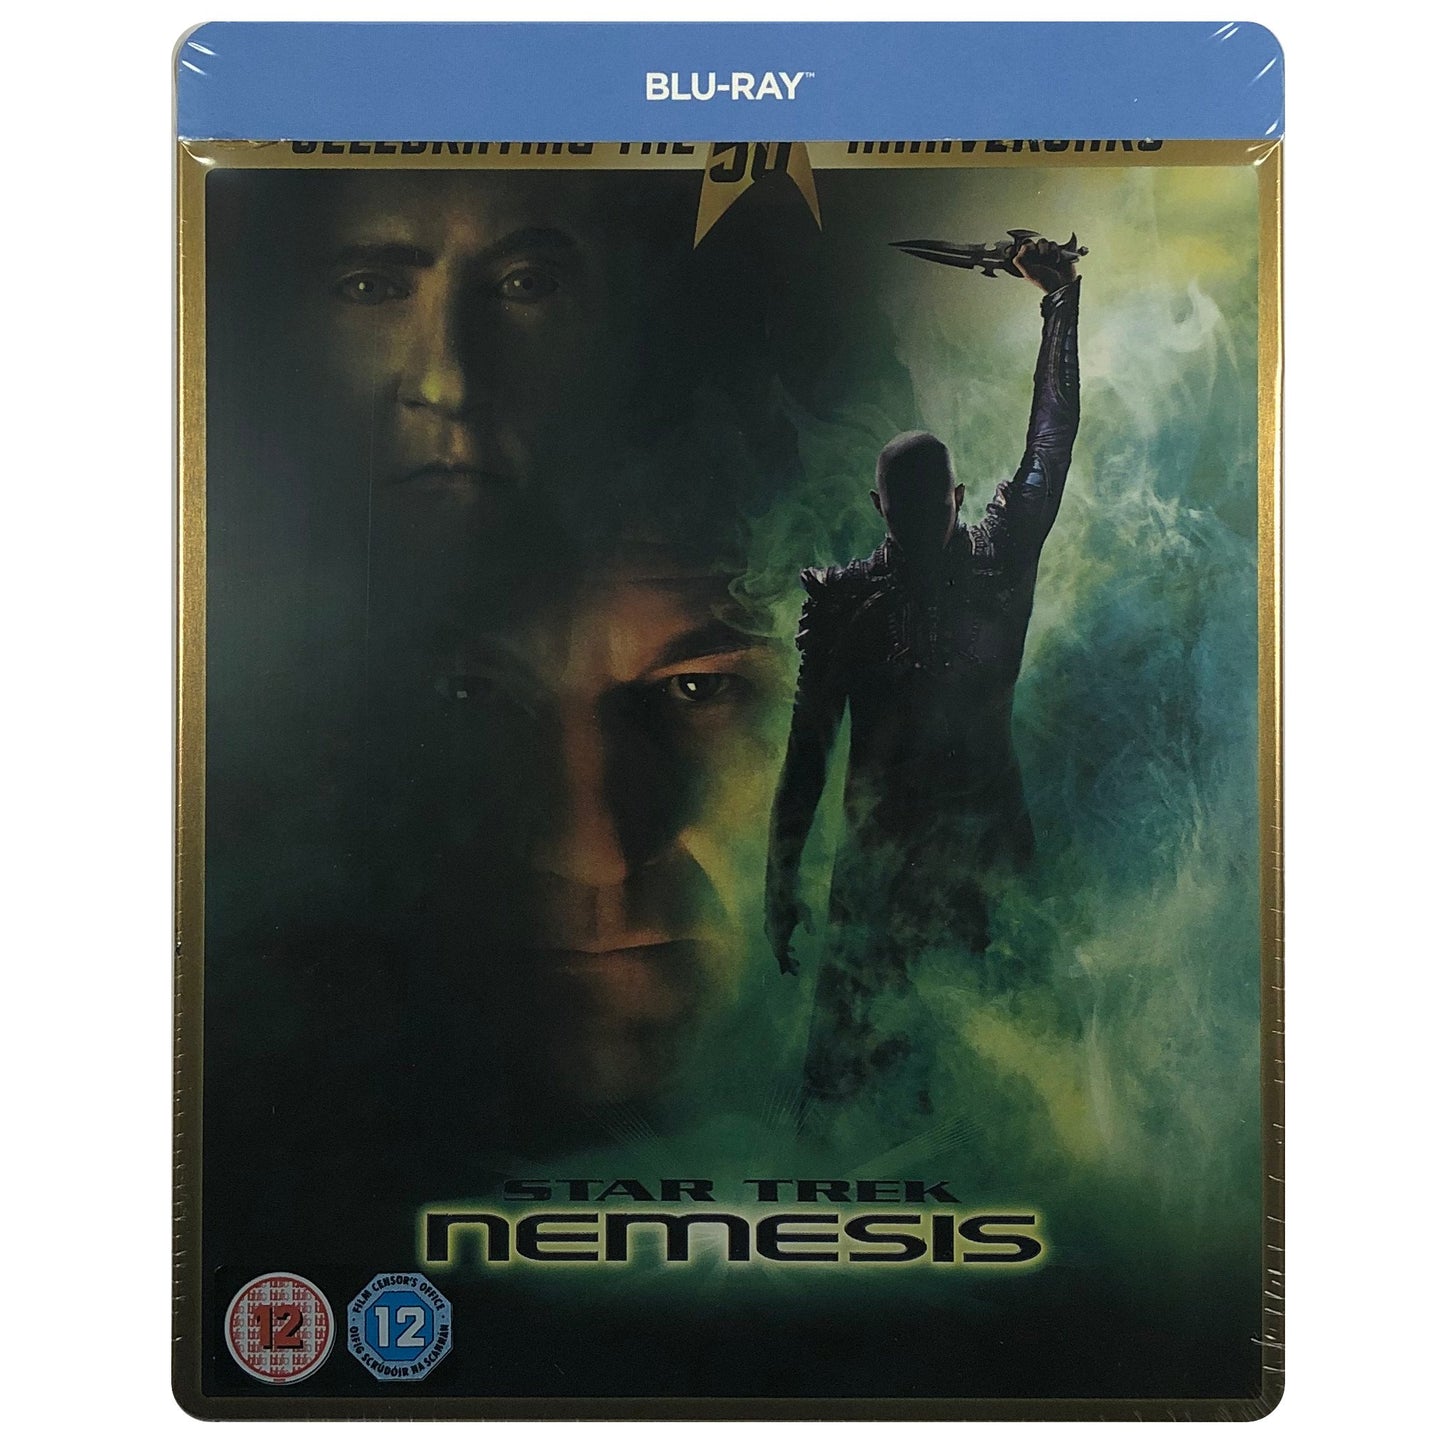 Star Trek X: Nemesis 4K